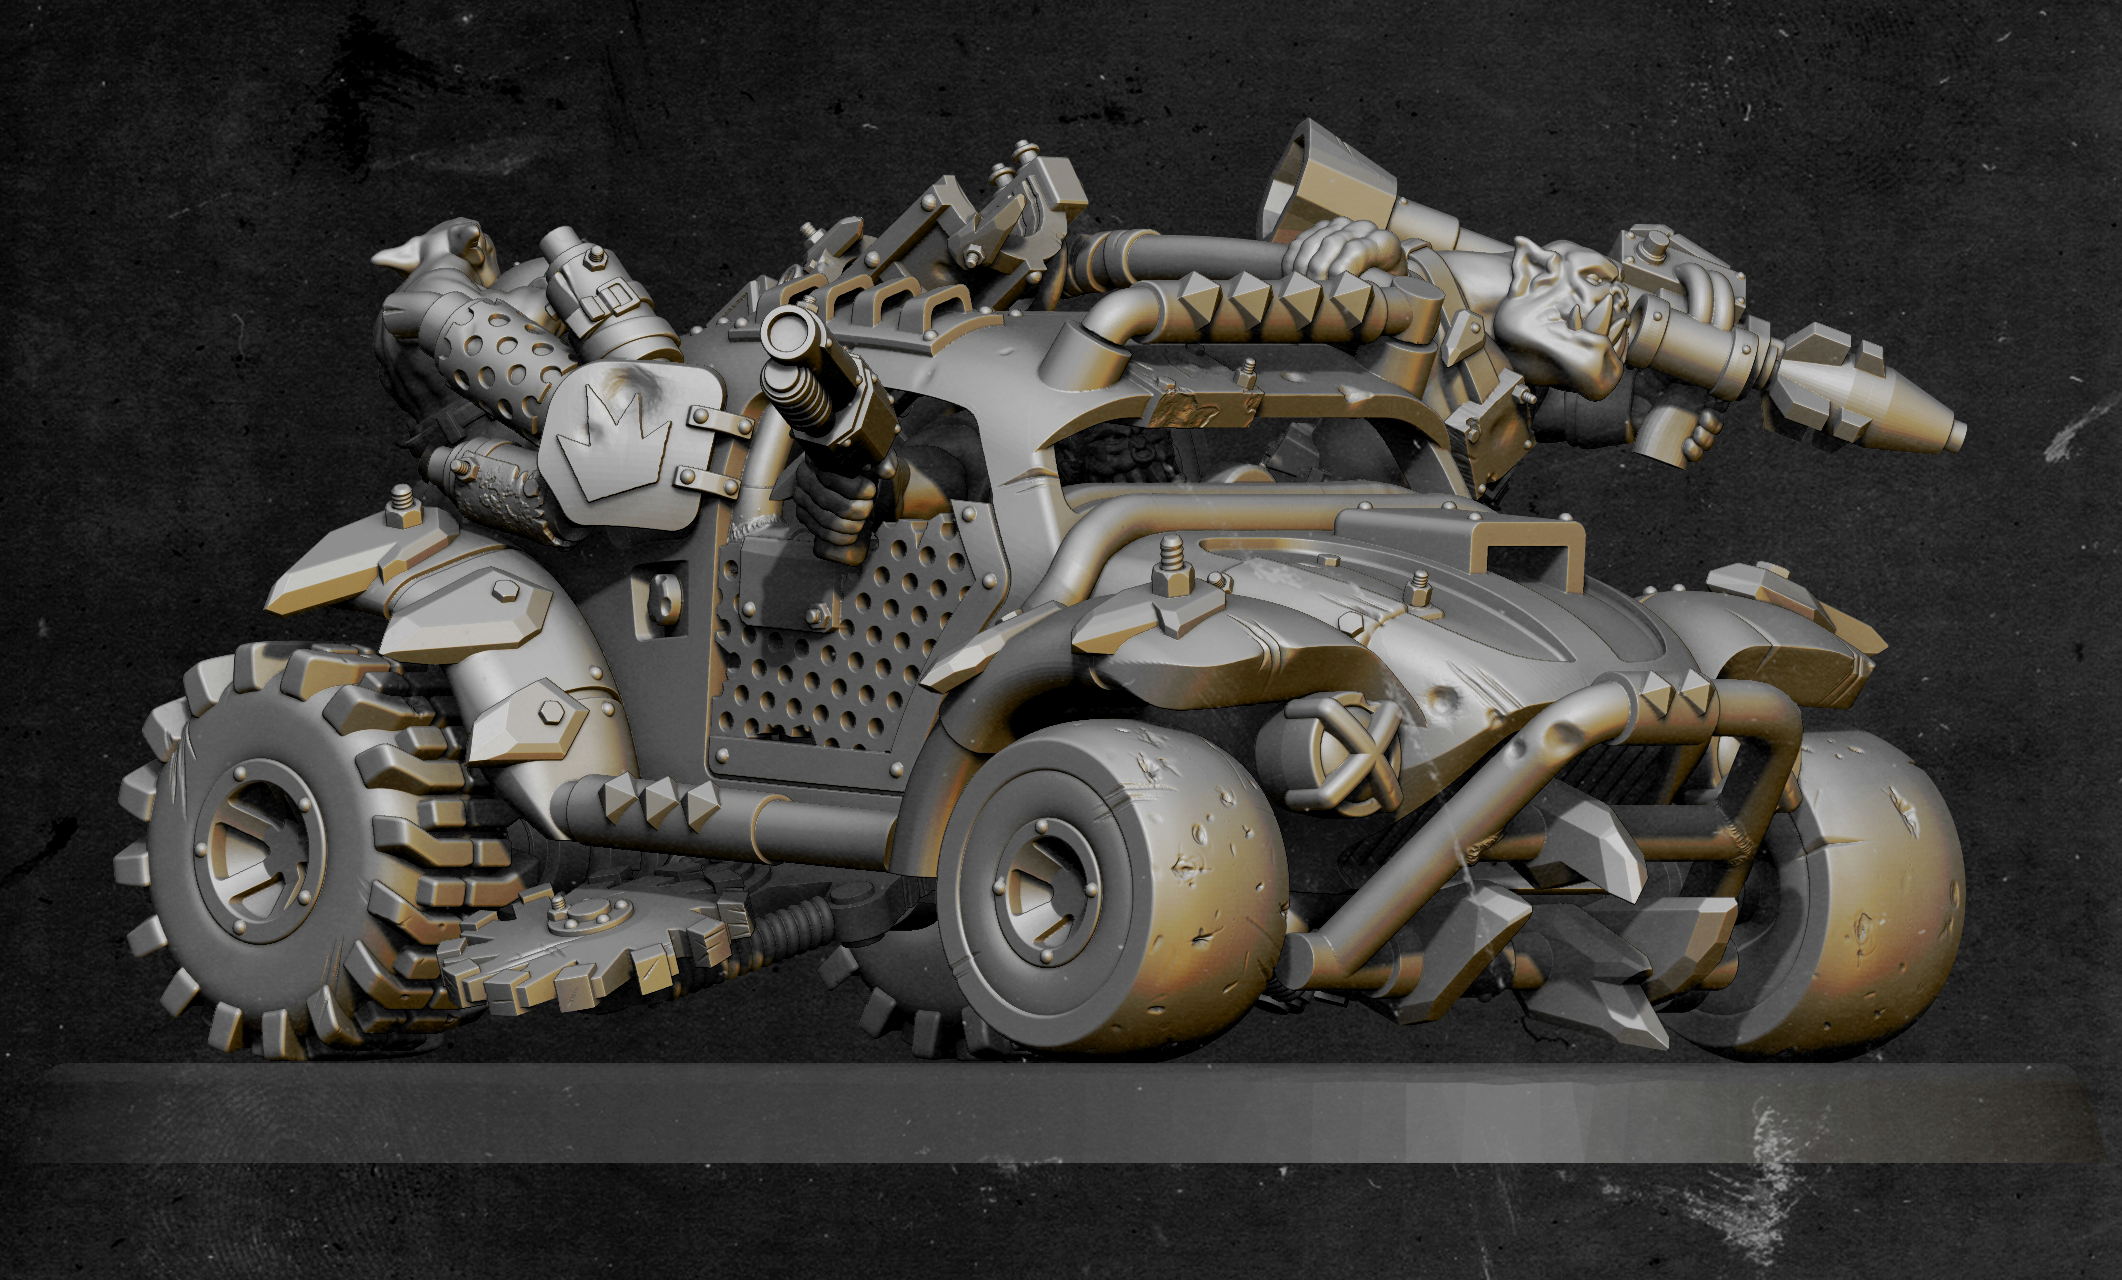 beatle buggy, scrapjet, dragster, dakka, rivet, squig ork 40k buggy 3d printing